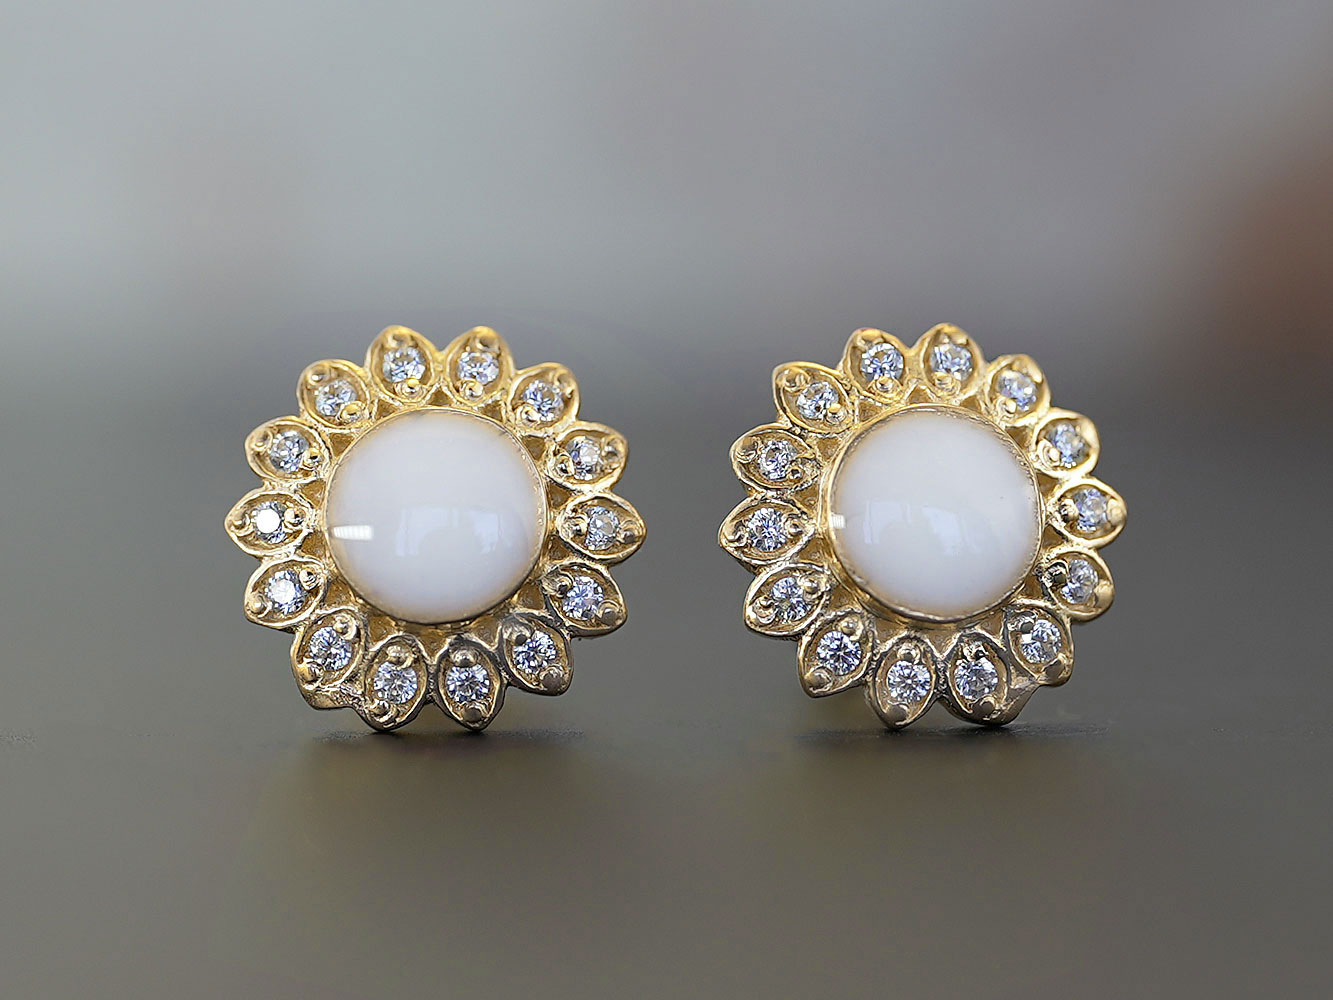 breastmilk jewelry fancy crystals star or flower shaped studded earrings KeepsakeMom